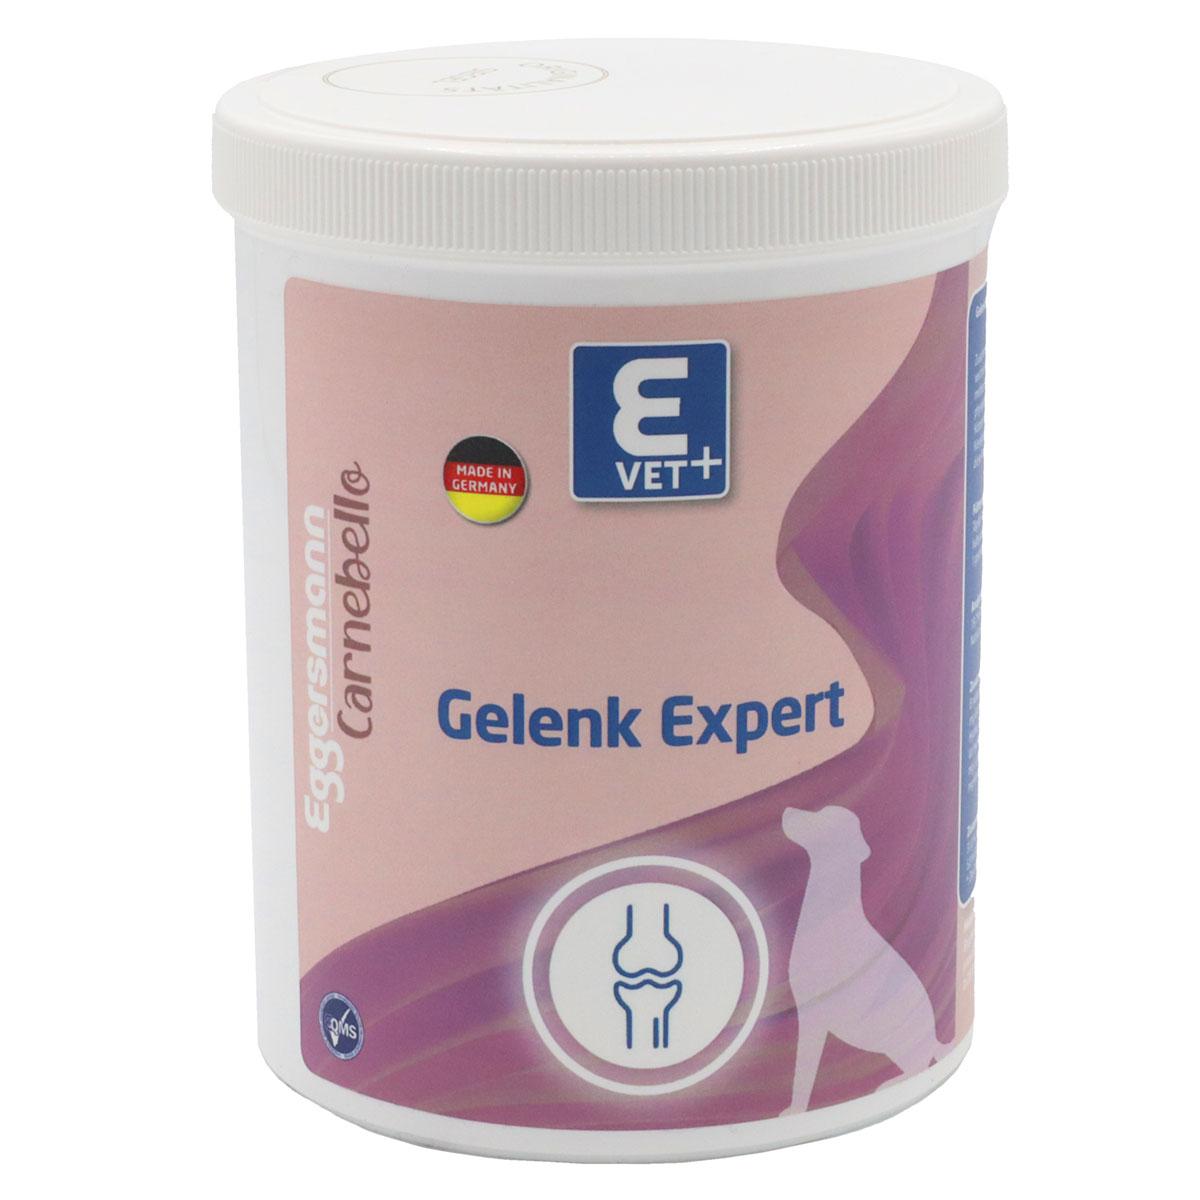 Eggersmann Carnebello - E VET+ Gelenk Expert 350 g